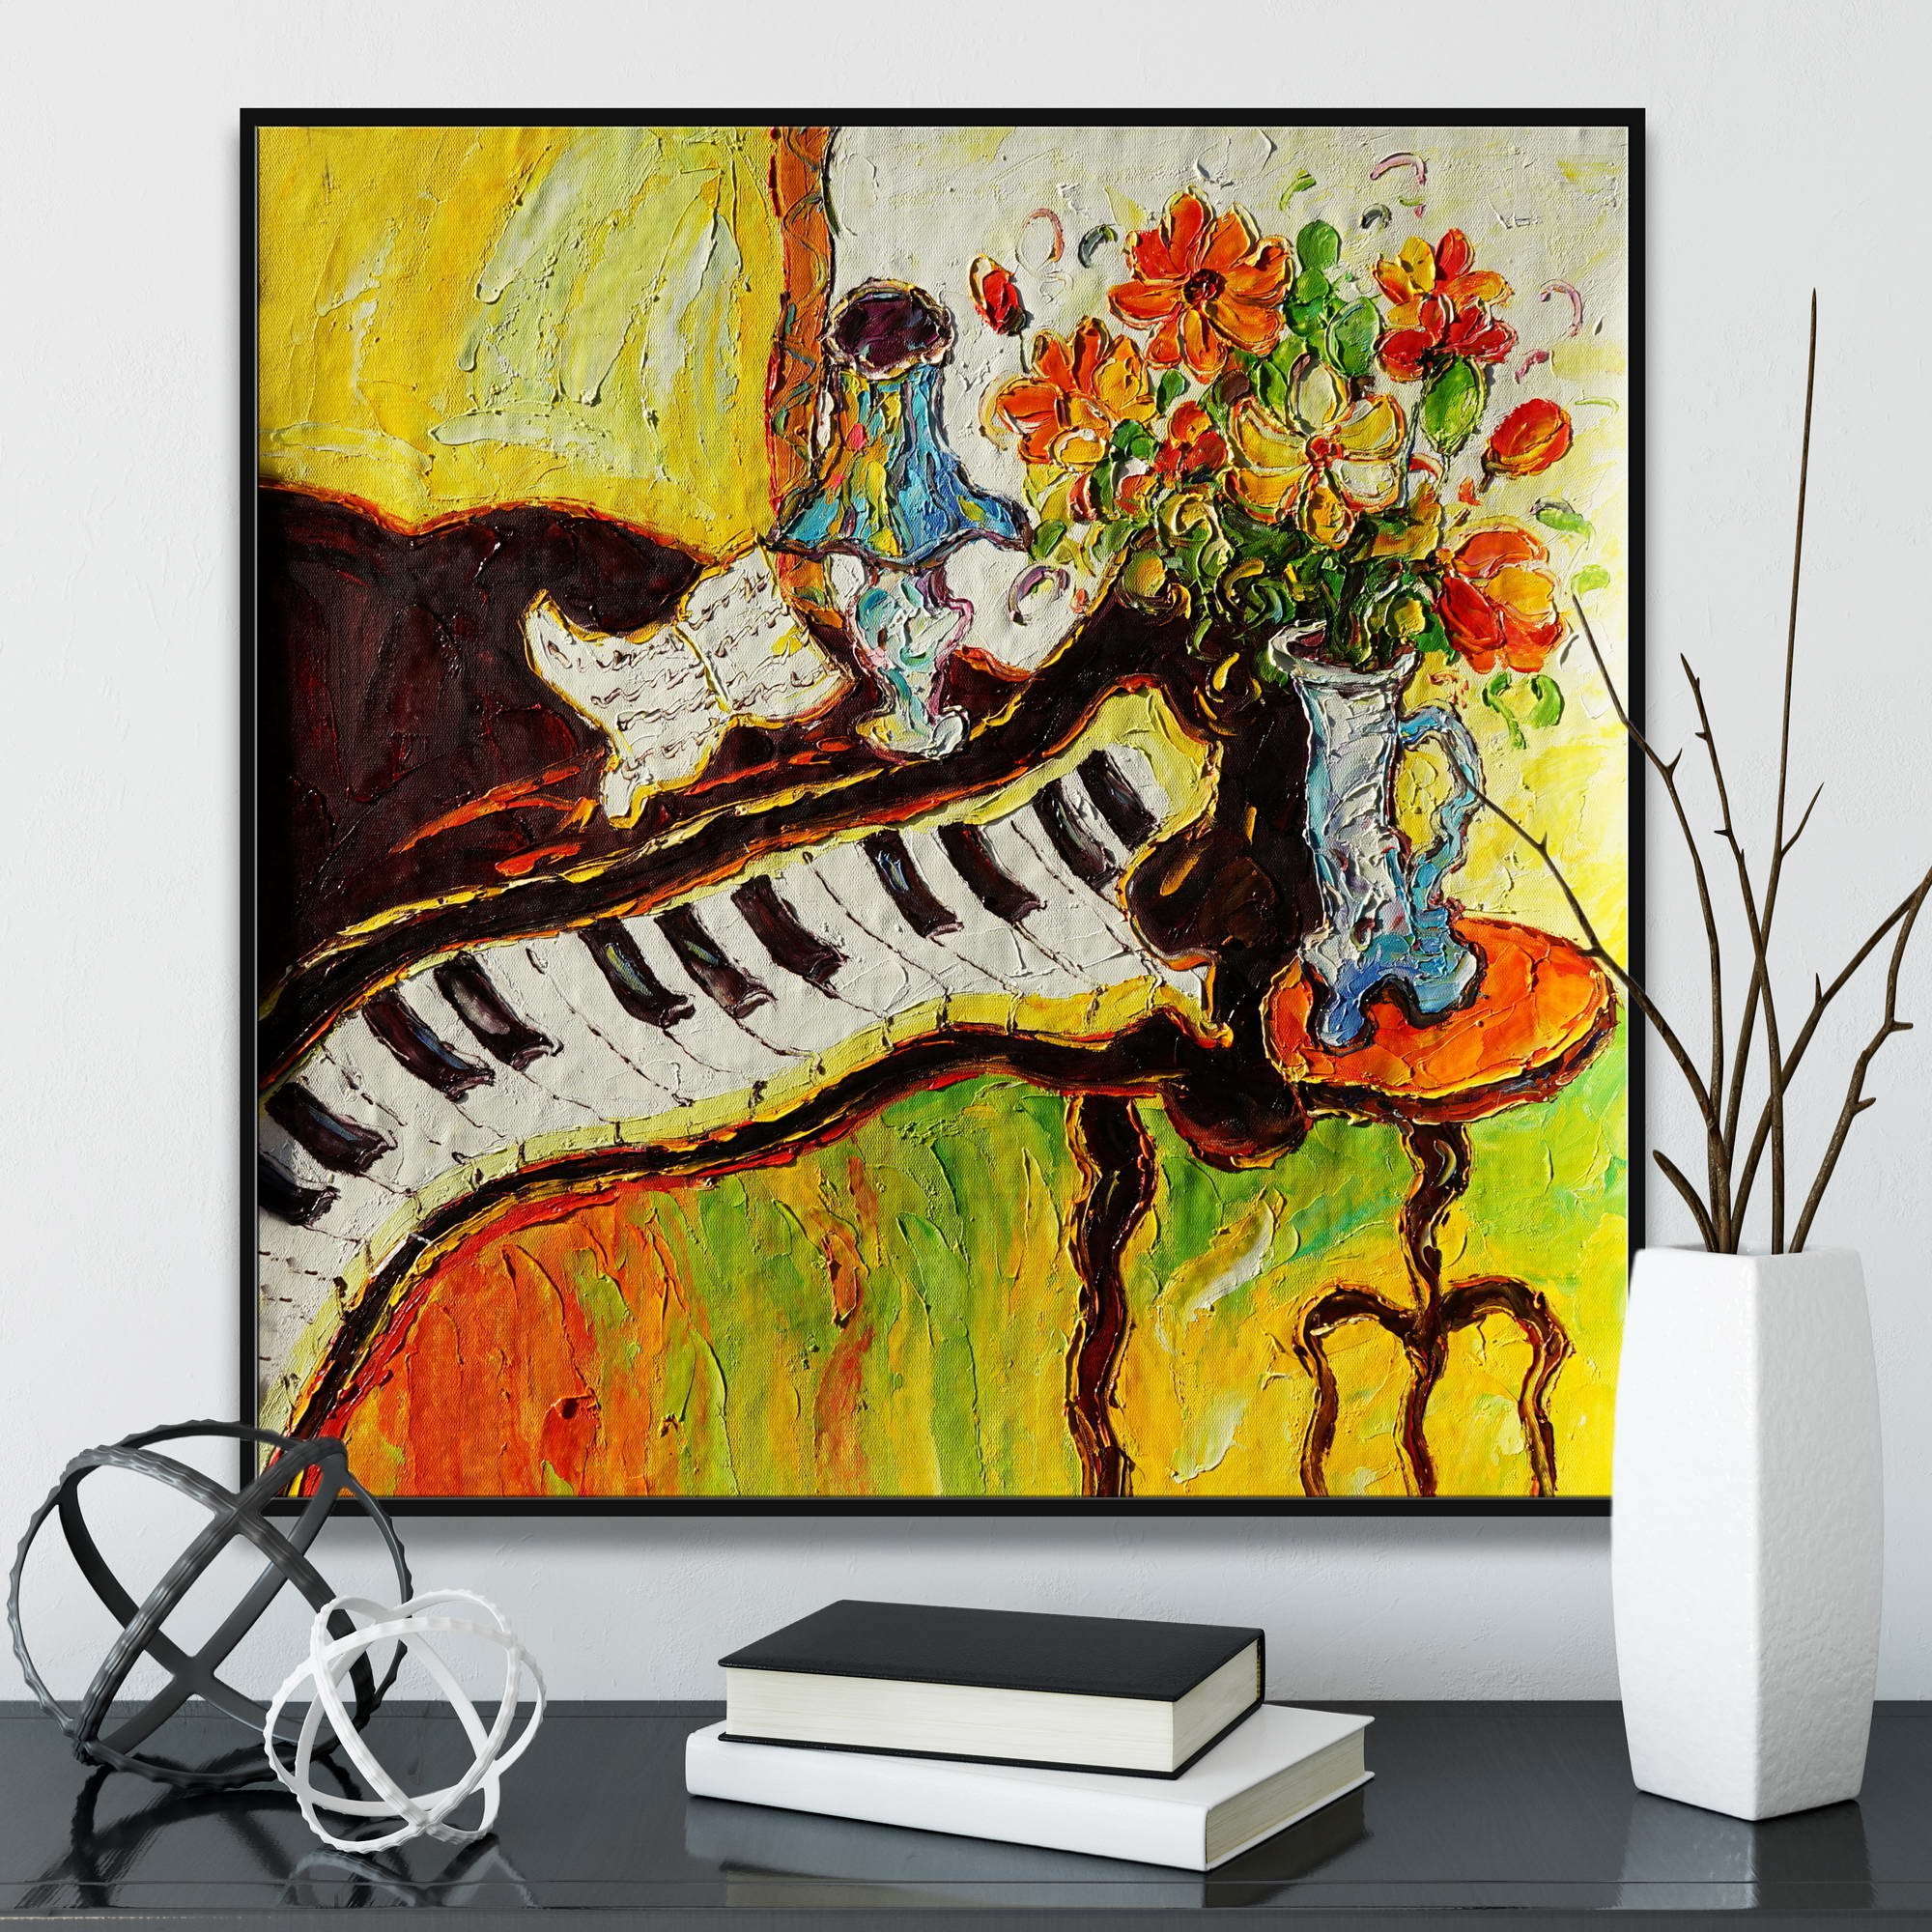 Dipinto espressionista di vaso di fiori su un pianoforte